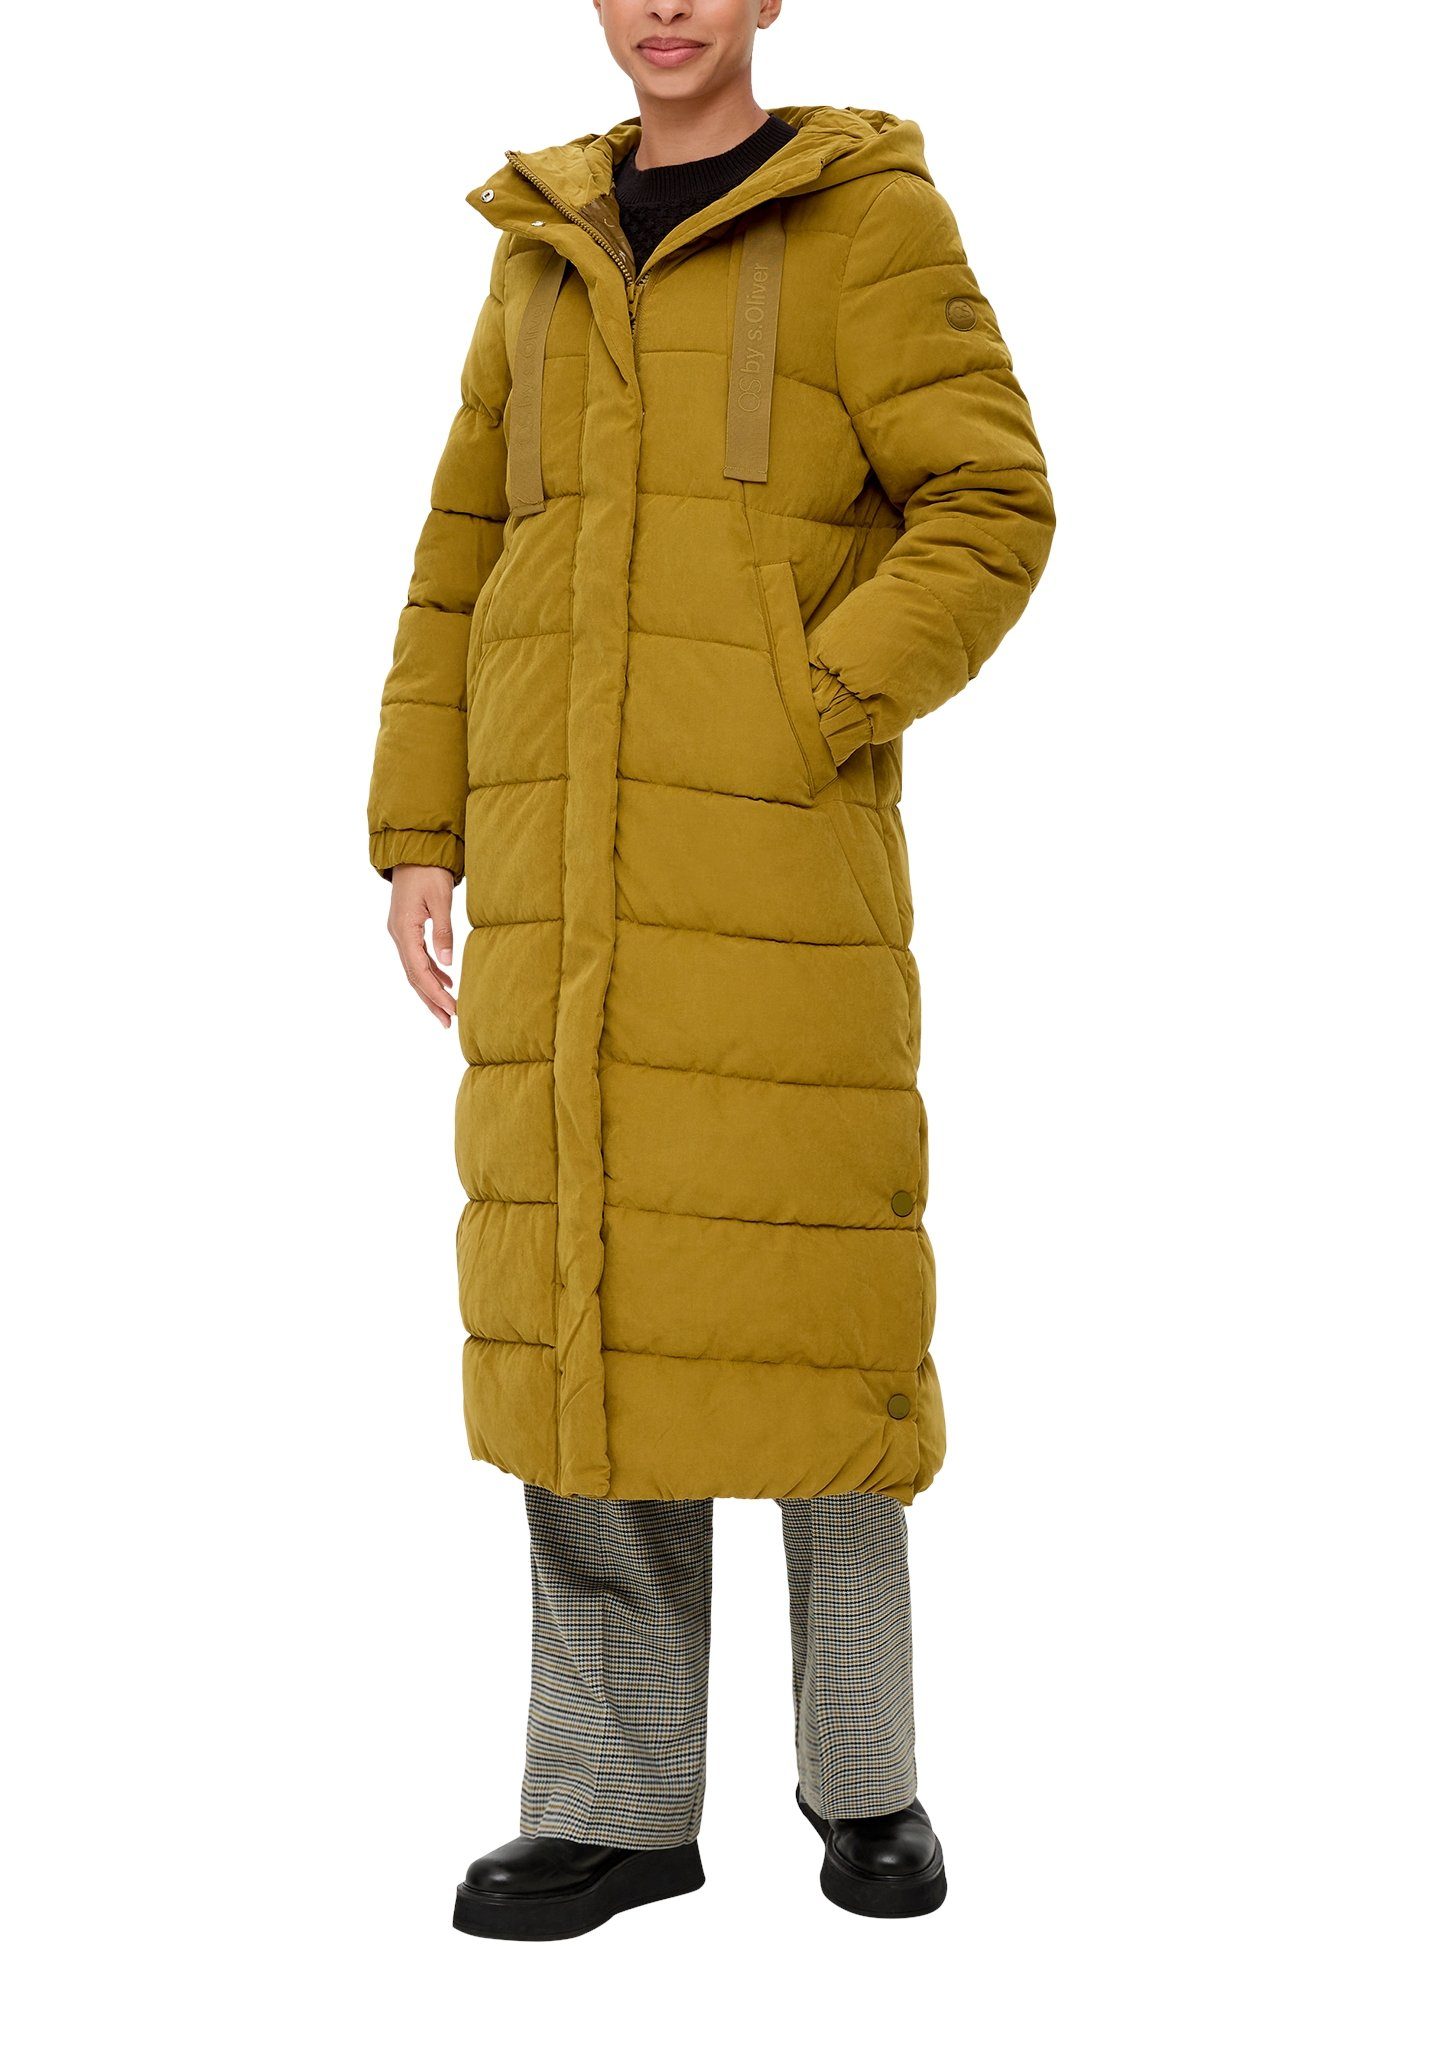 Q S designed by Doorgestikte jas met een capuchon